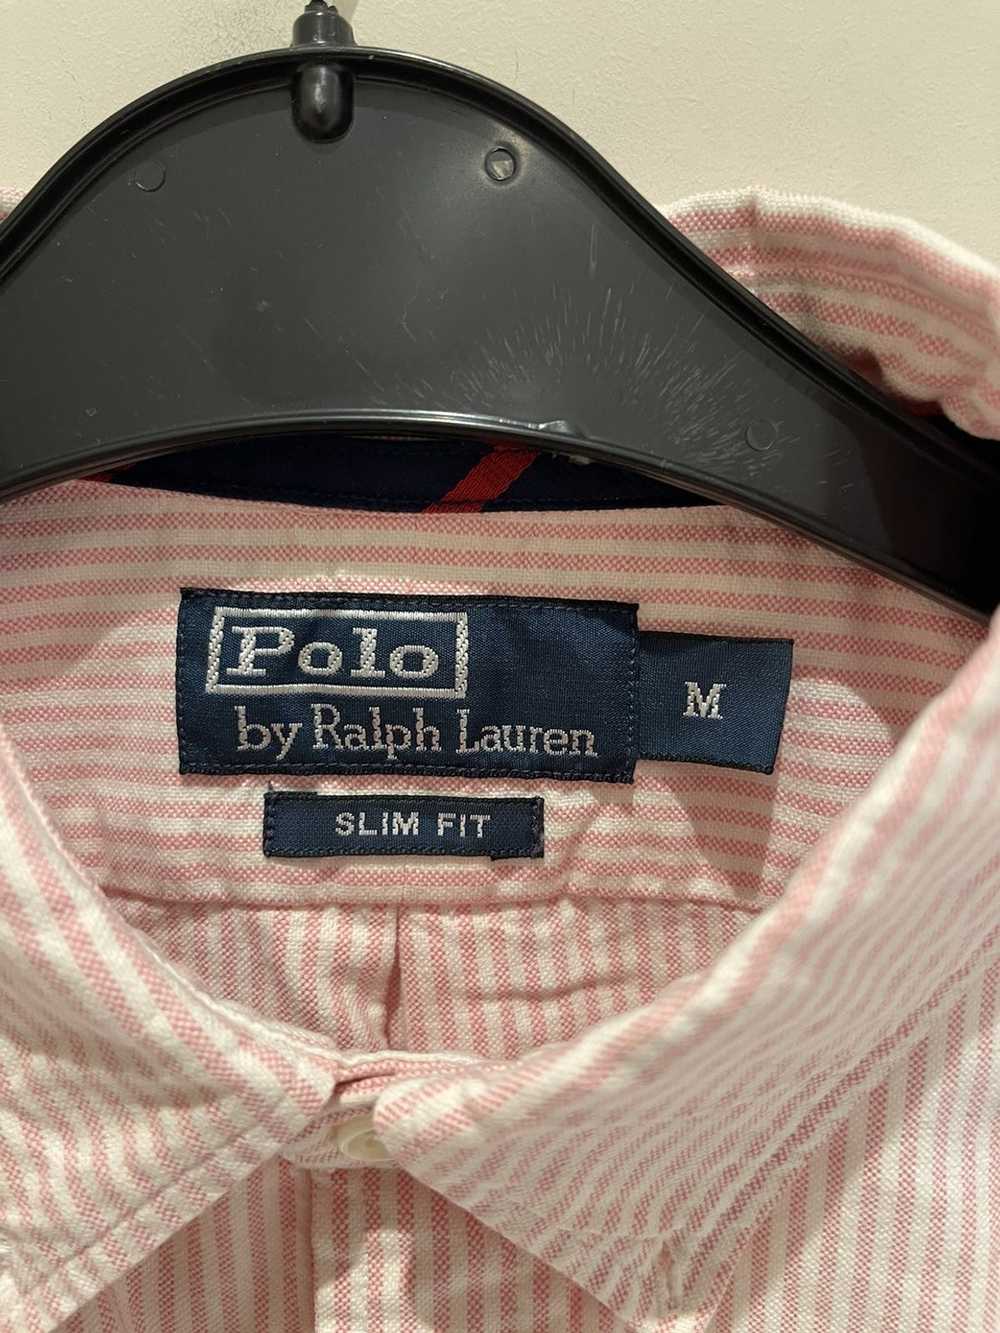 Polo Ralph Lauren Polo by Ralph Lauren Pink Shirt - image 2